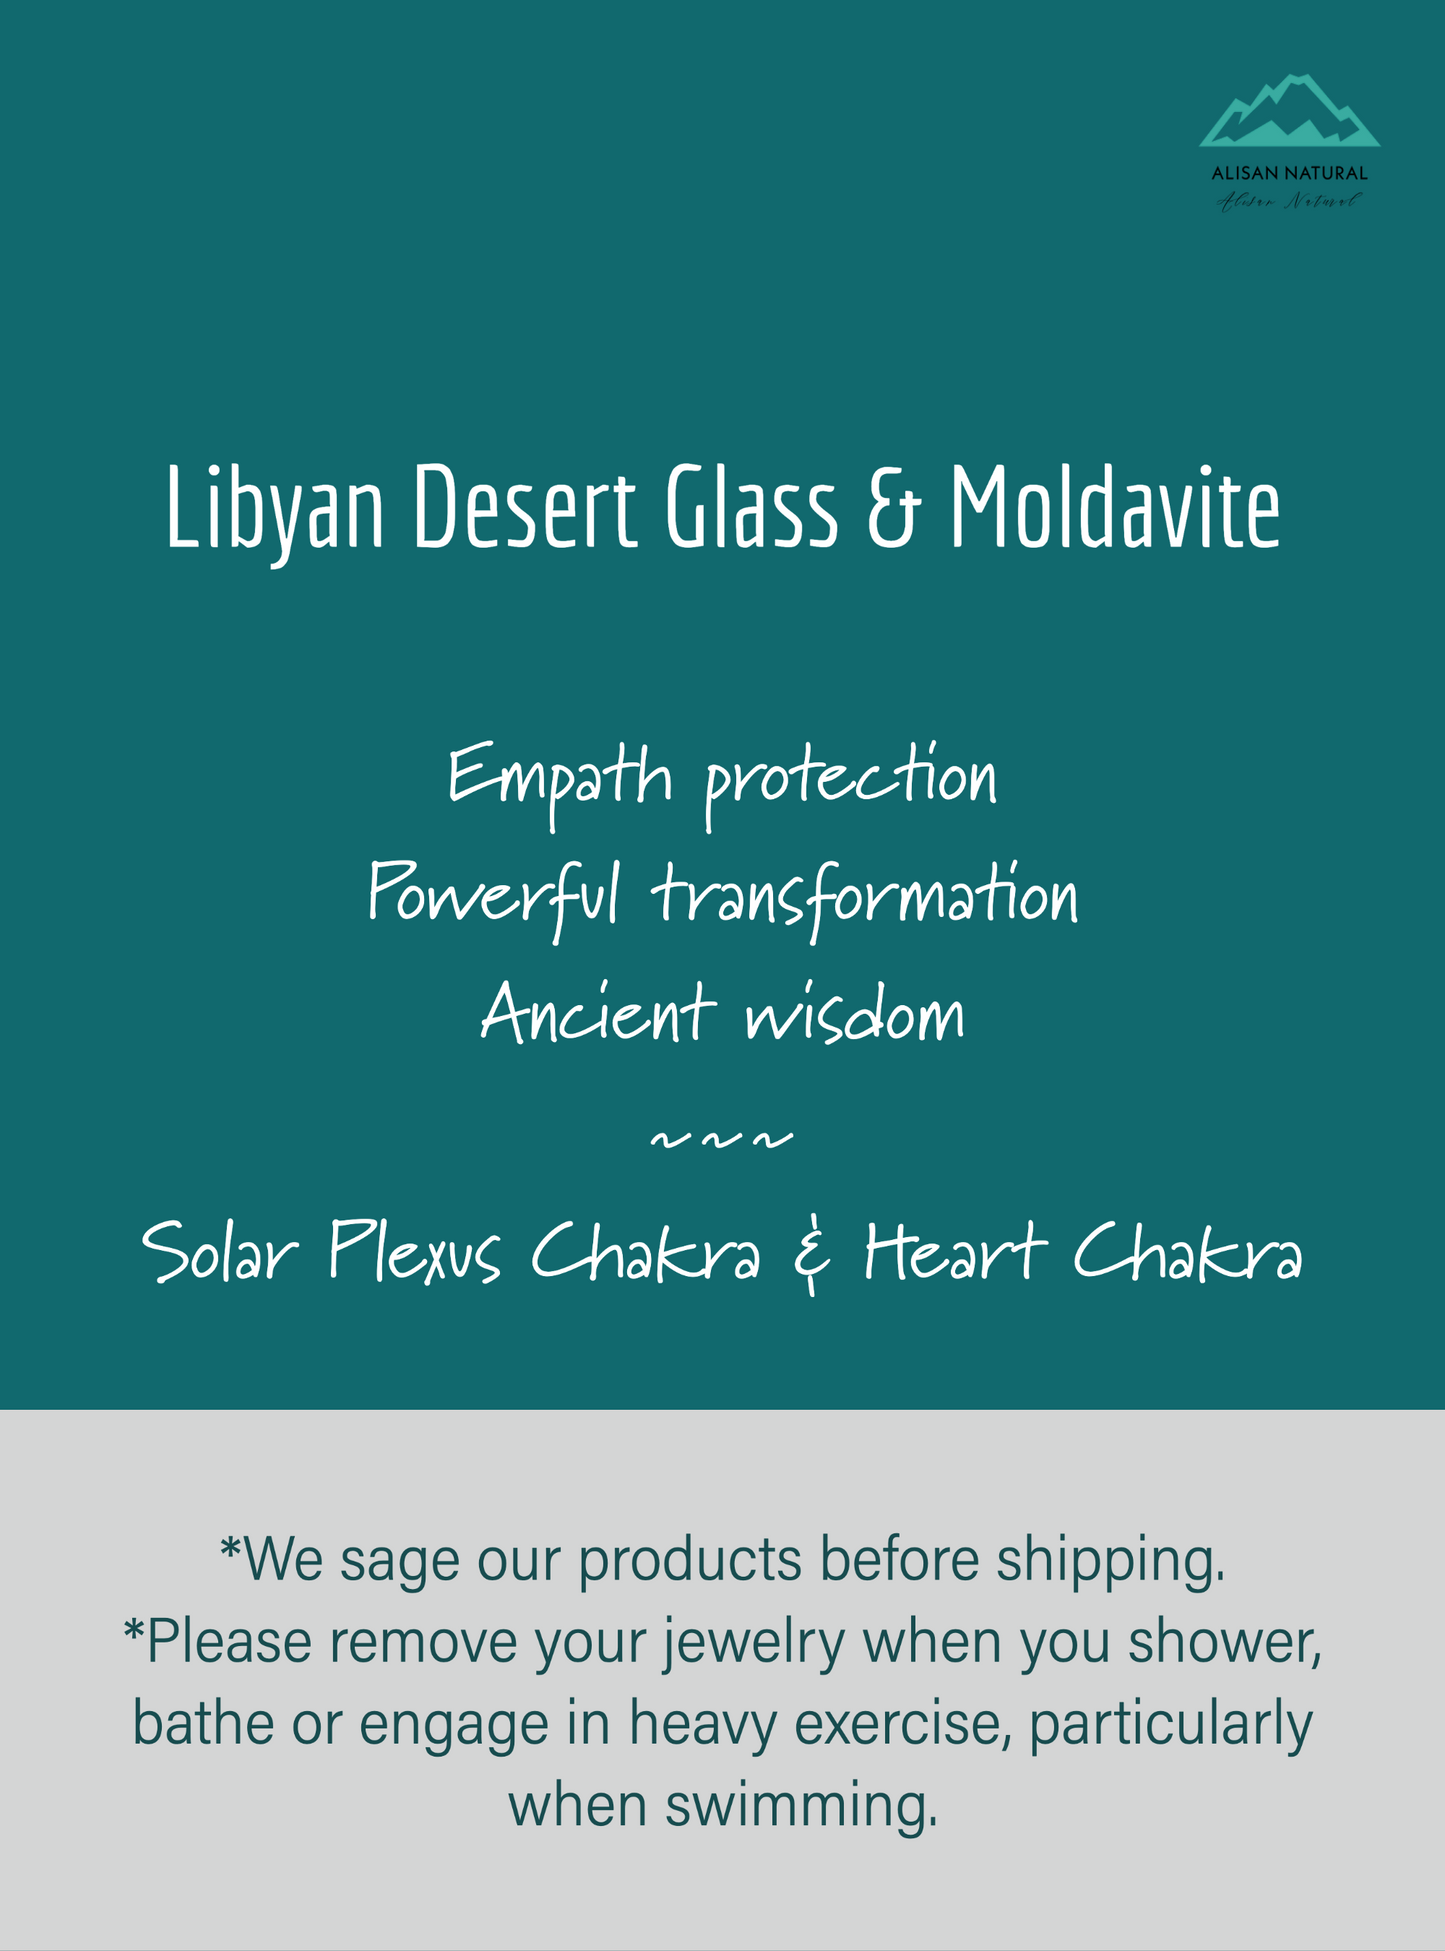 Genuine Libyan Desert Glass & Moldavite Silver Pendant #61